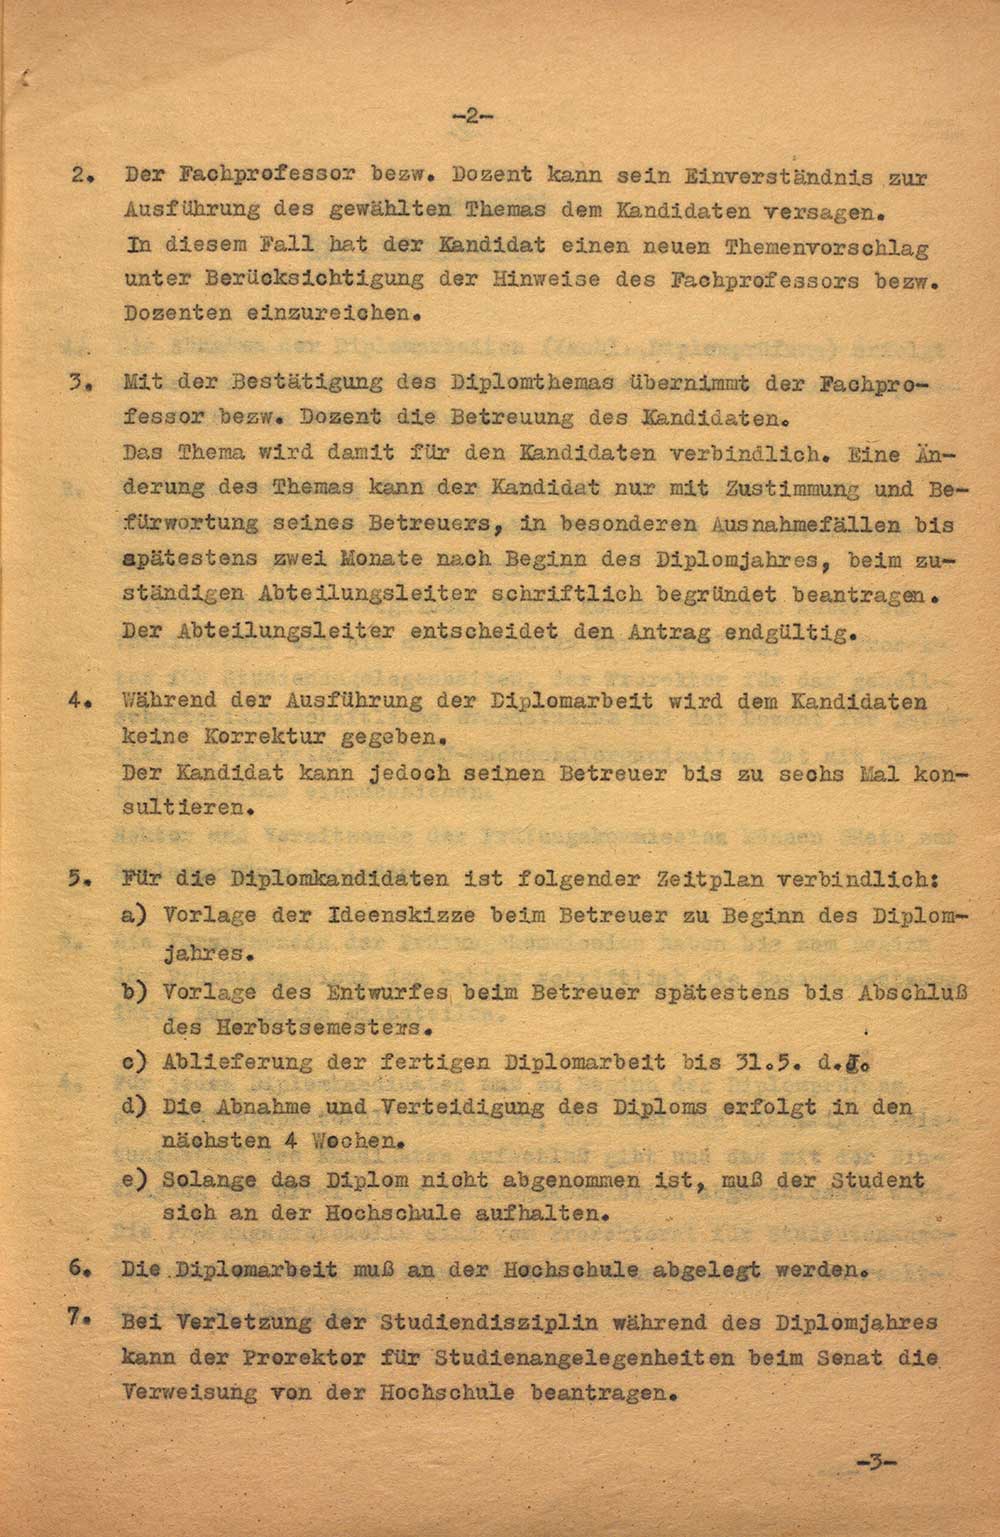 Diplomprüfungsordnung der Hochschule für Bildende Künste Dresden vom 01.05.1958 Archiv HfBK Dresden, 05/EA/112, unpag. (2)